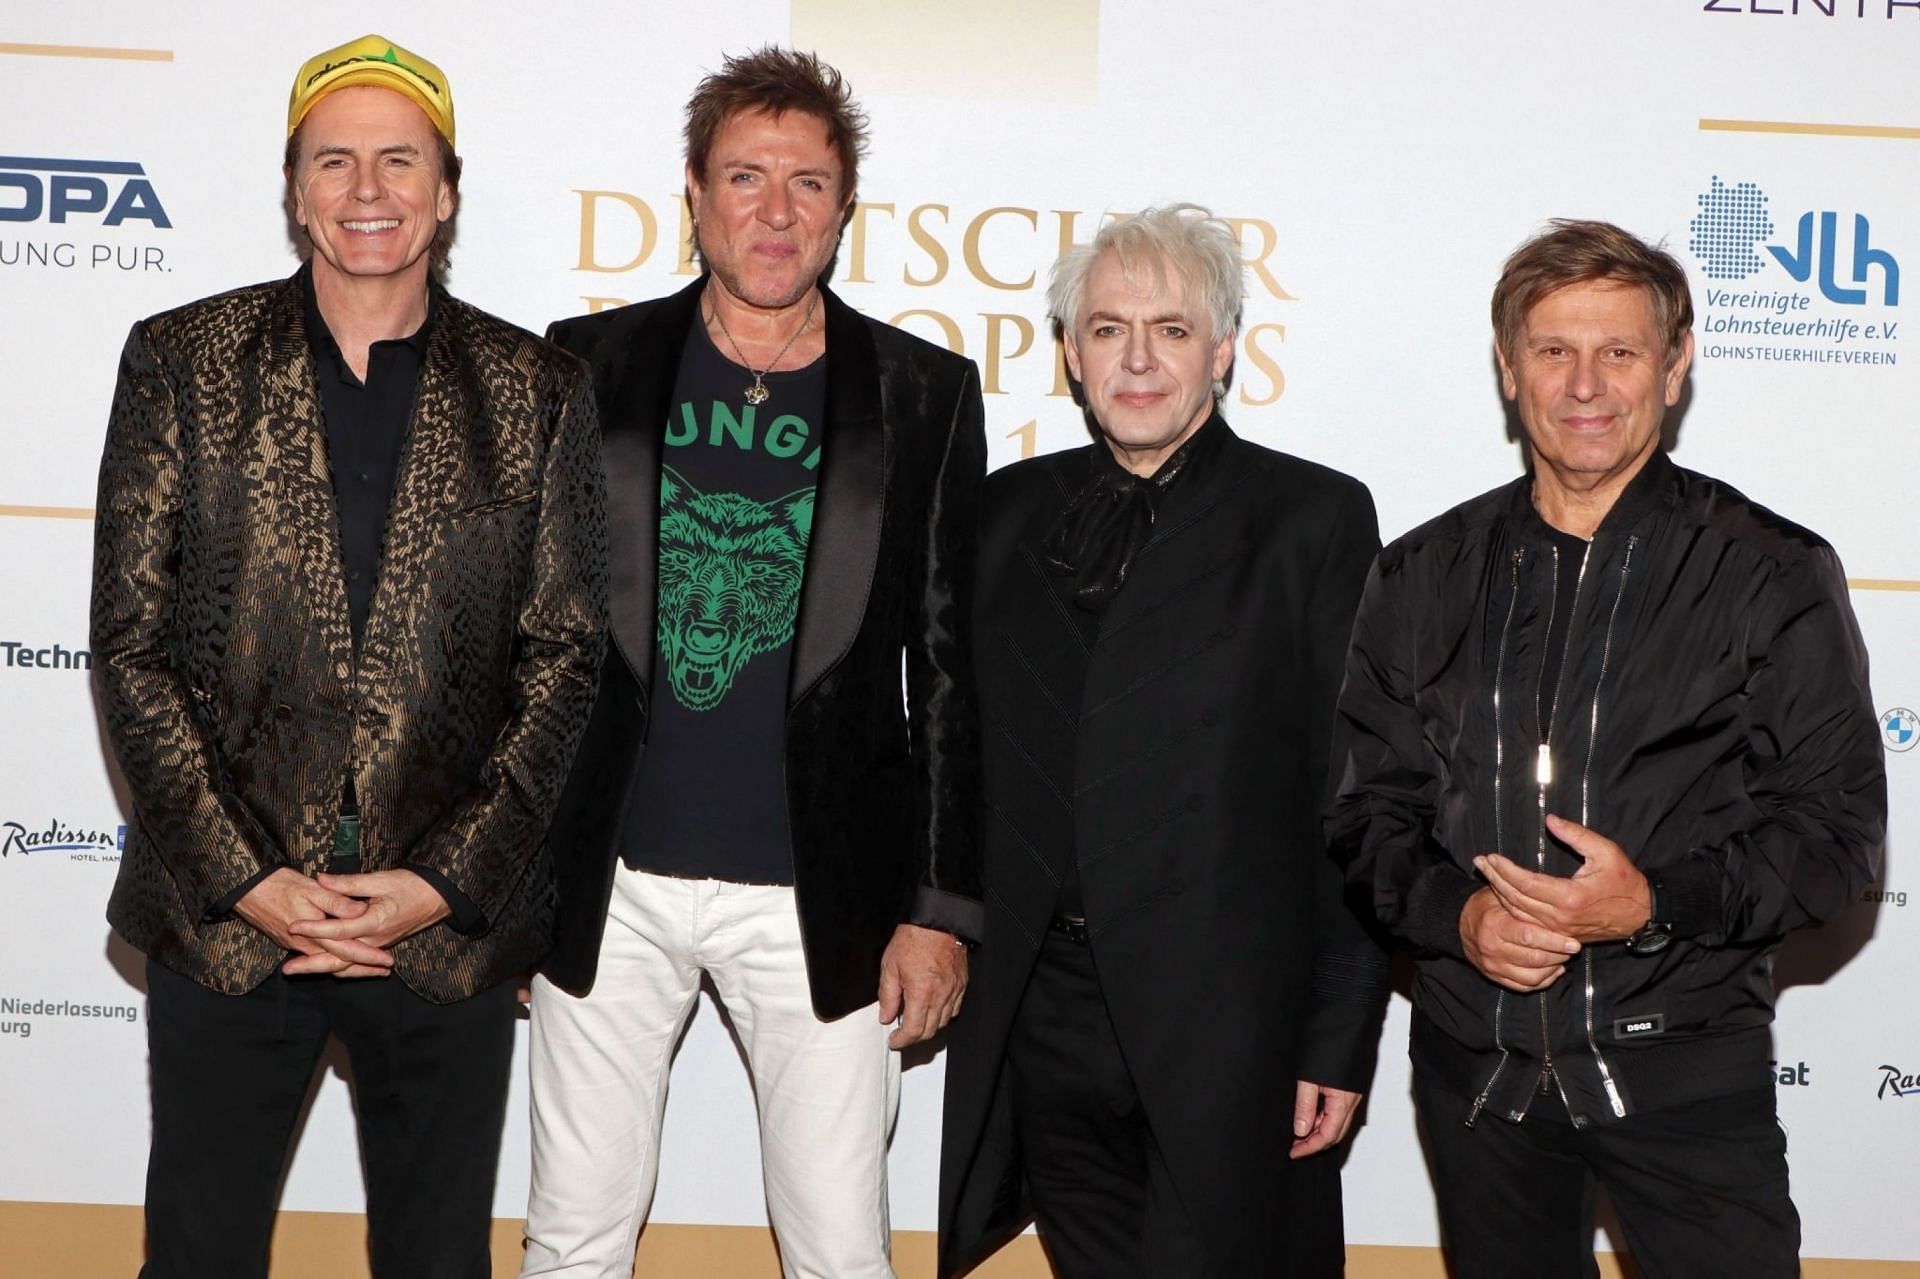  Duran Duran attend the Deutscher Radiopreis 2021 at Schuppen 52 on September 2, 2021 in Hamburg, Germany. (Image via Getty Image)